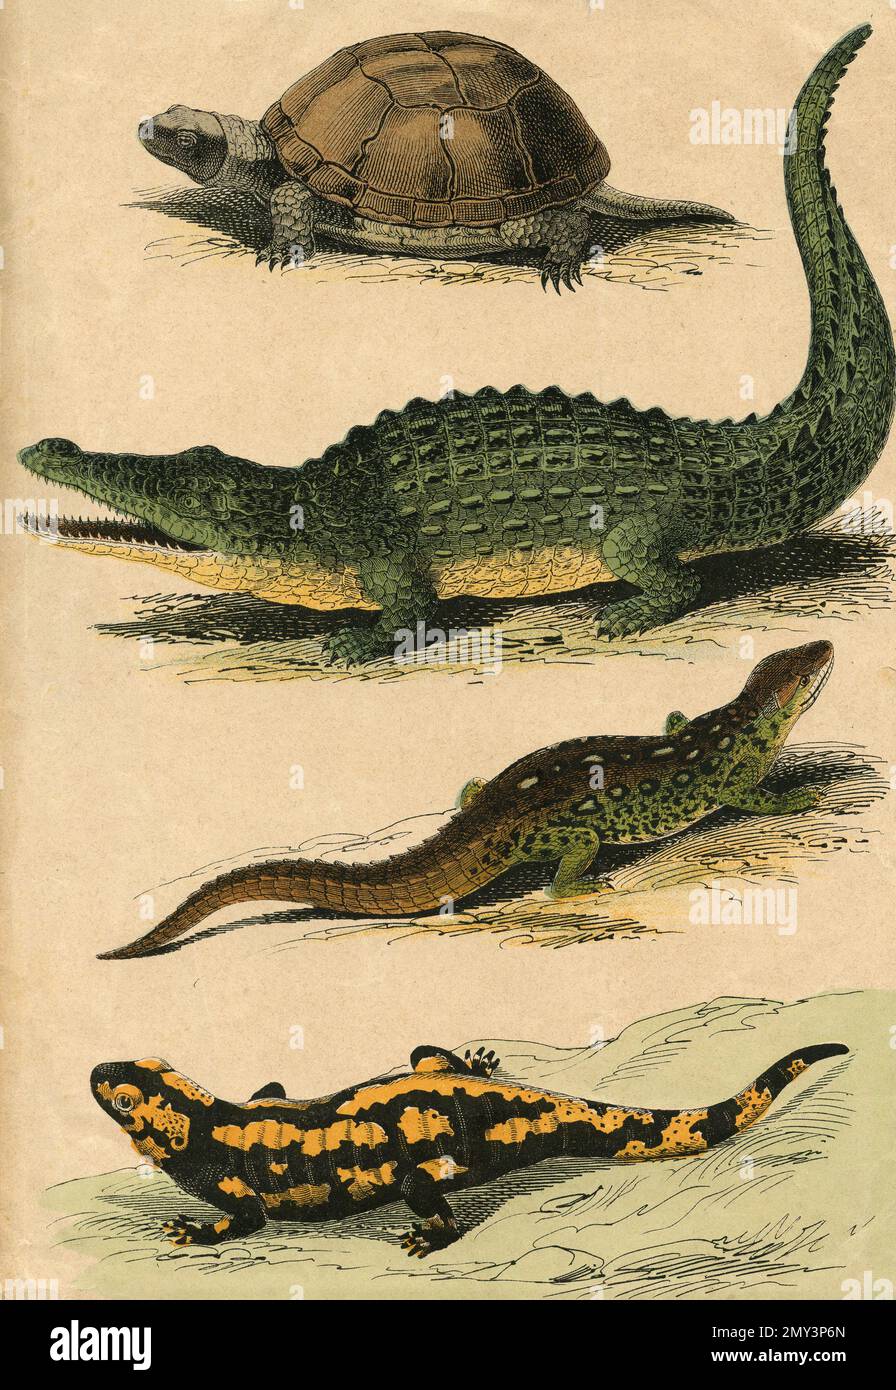 Vita animale, rettili: Tartaruga, coccodrillo, lucertola, Salamander, illustrazione a colori, 1800s Foto Stock